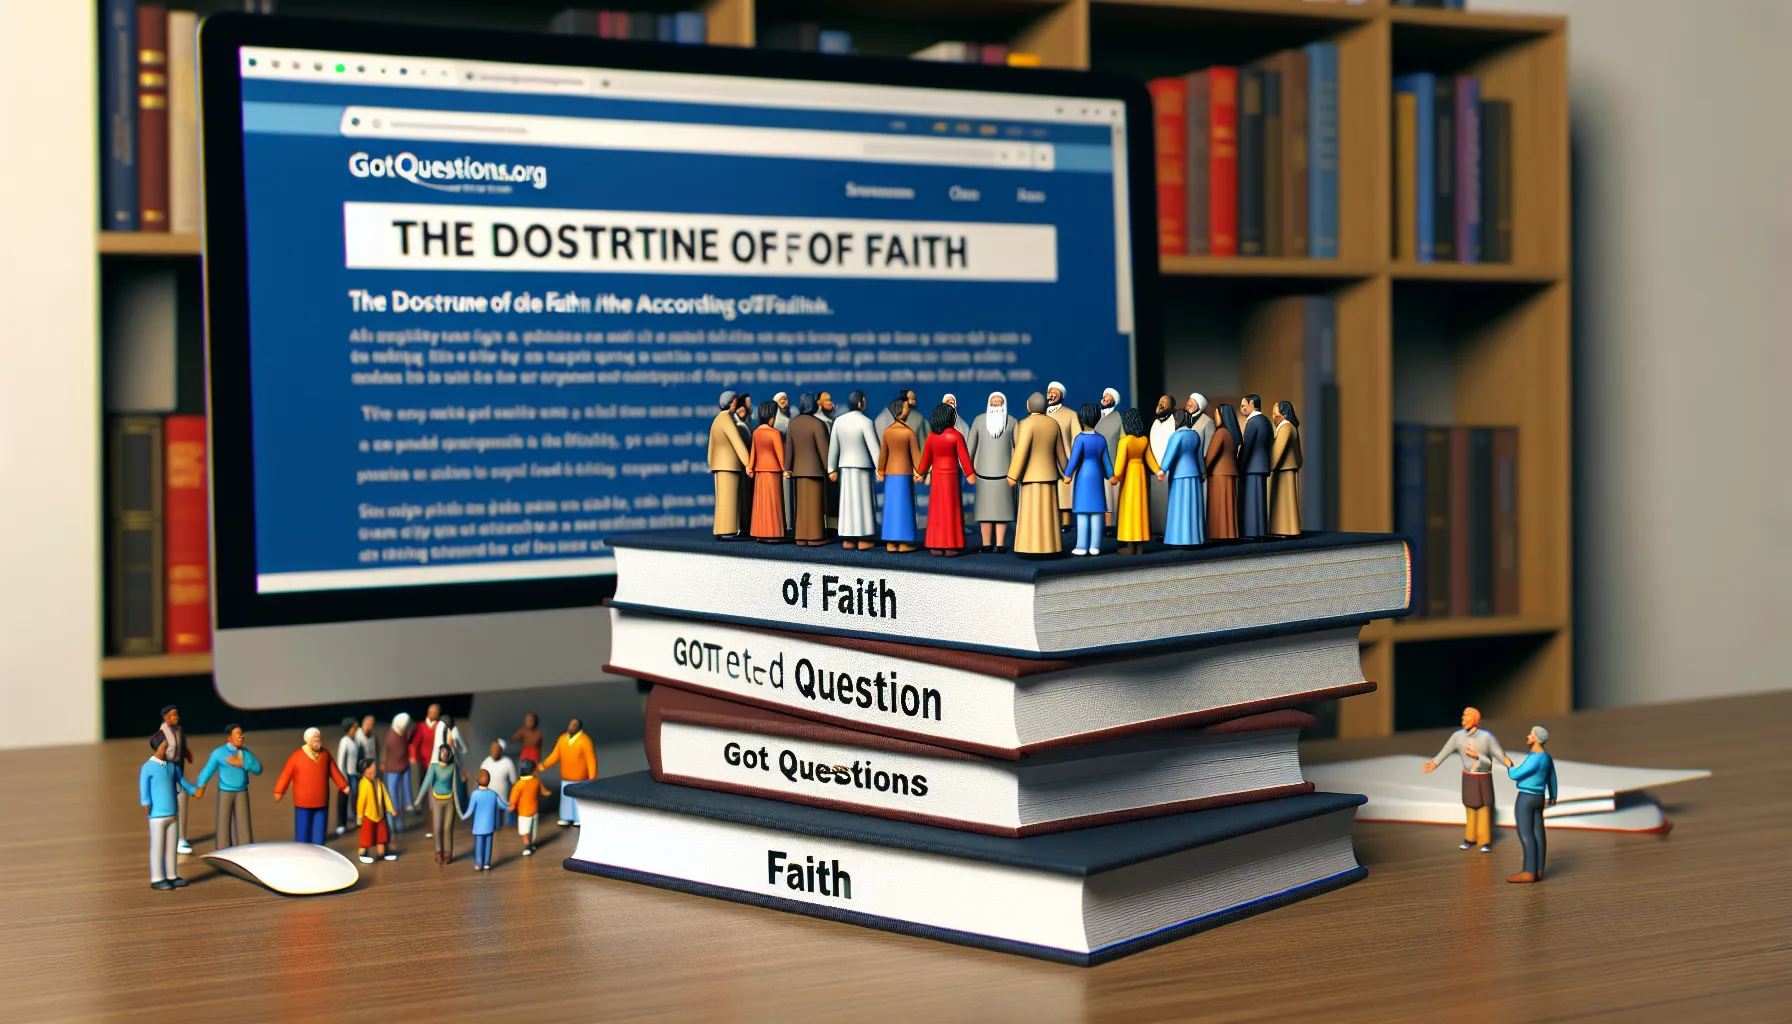 La doctrina de fe según GotQuestions.org.